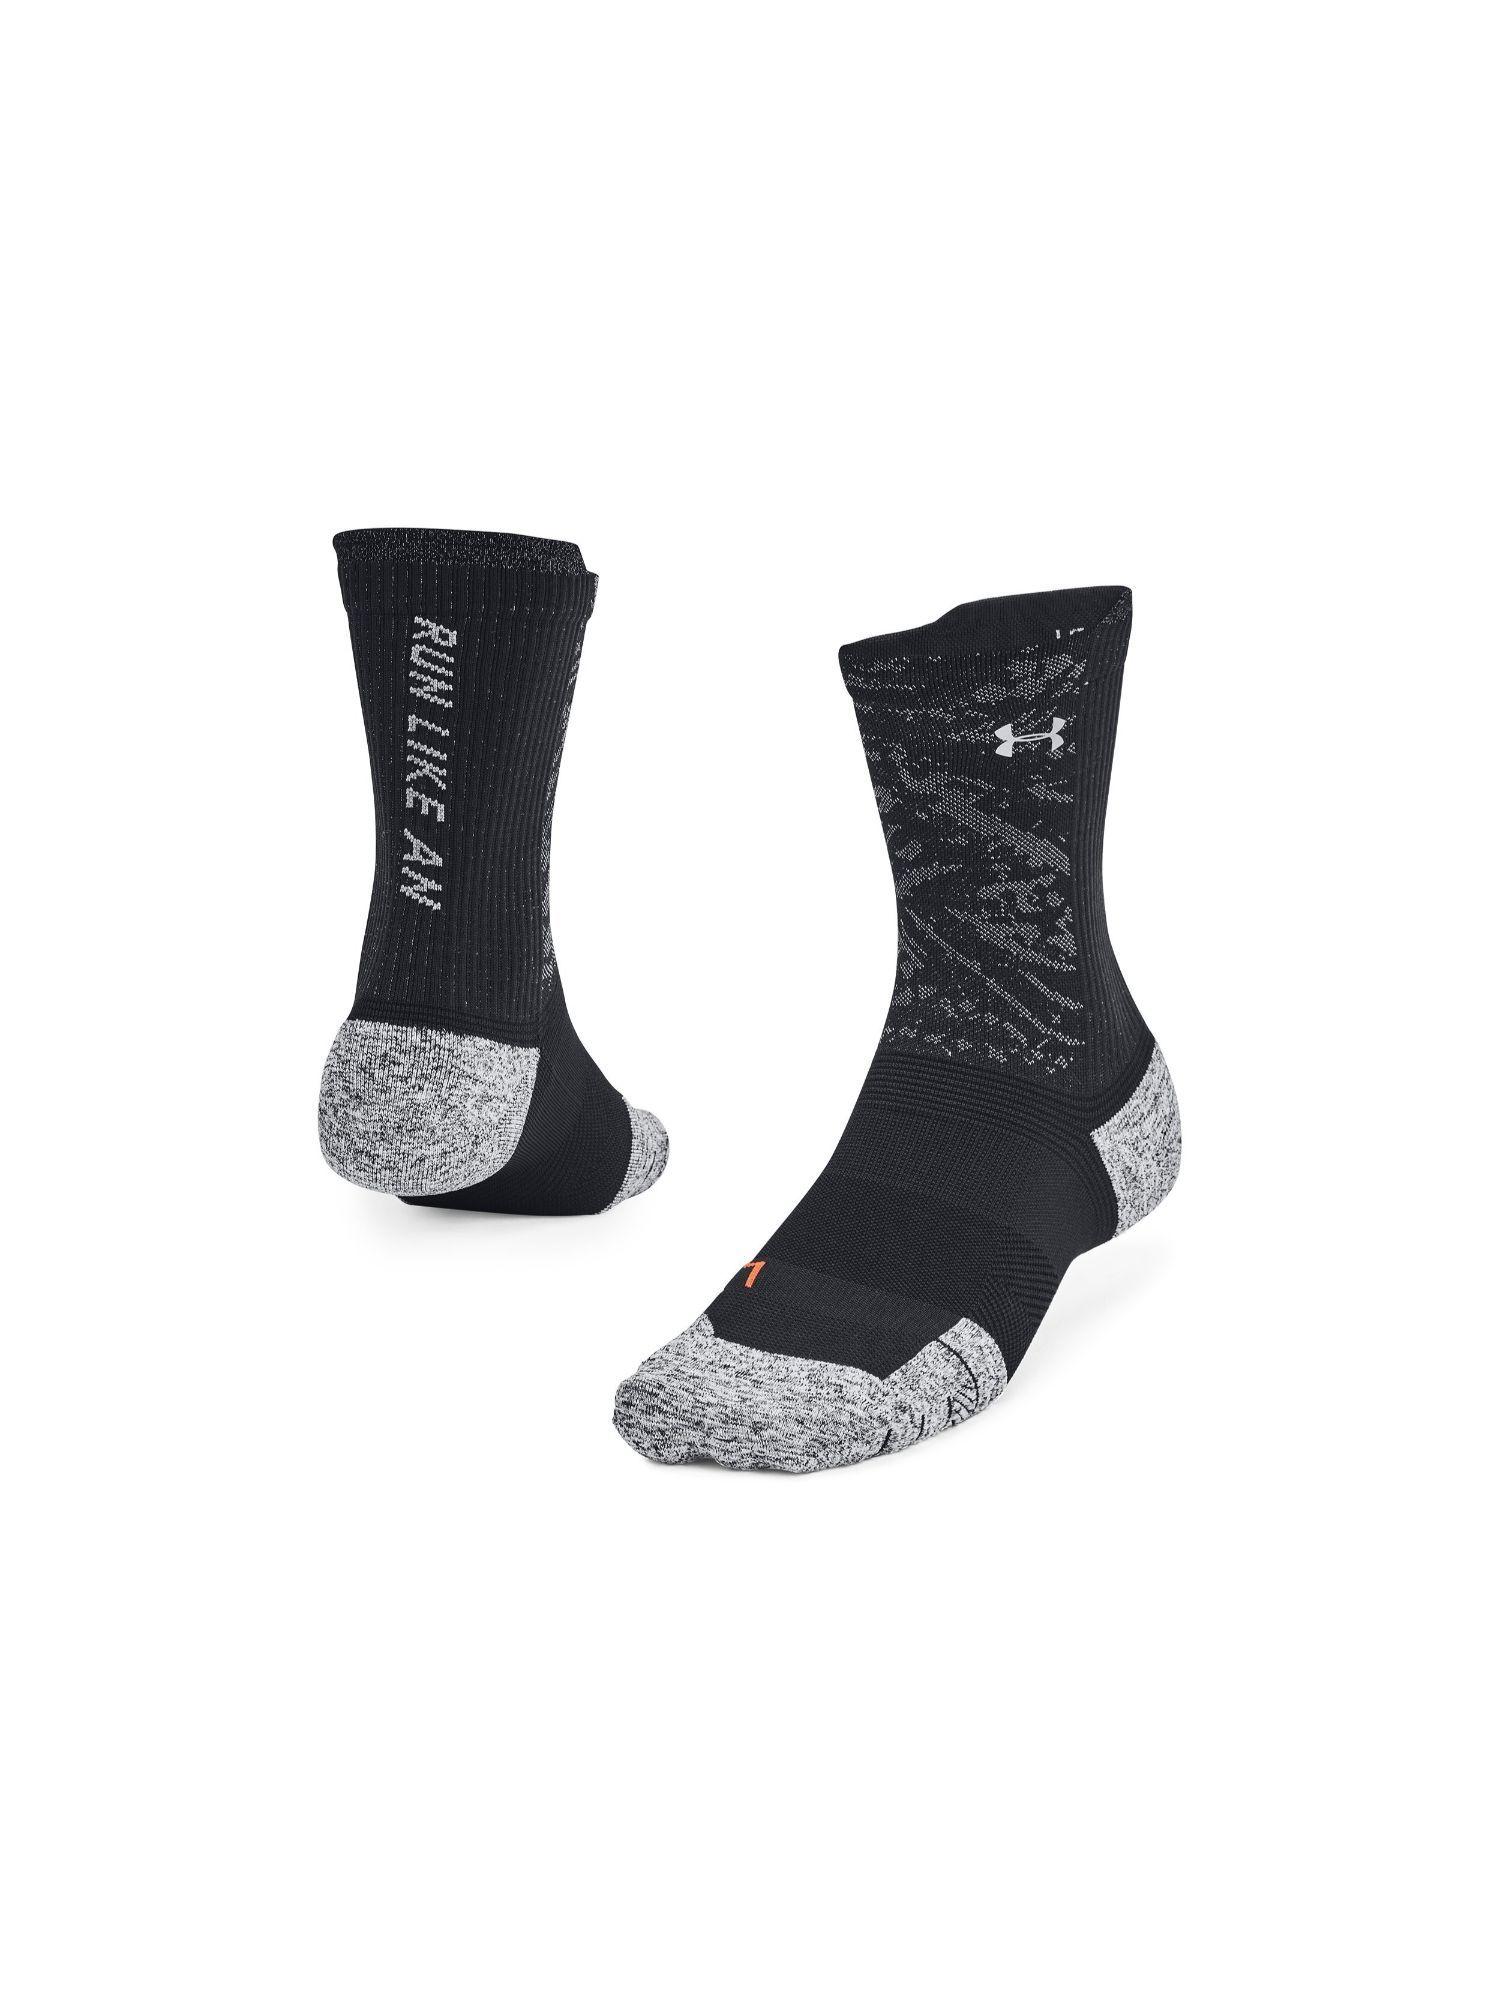 unisex adjustable run cushion mid socks - black